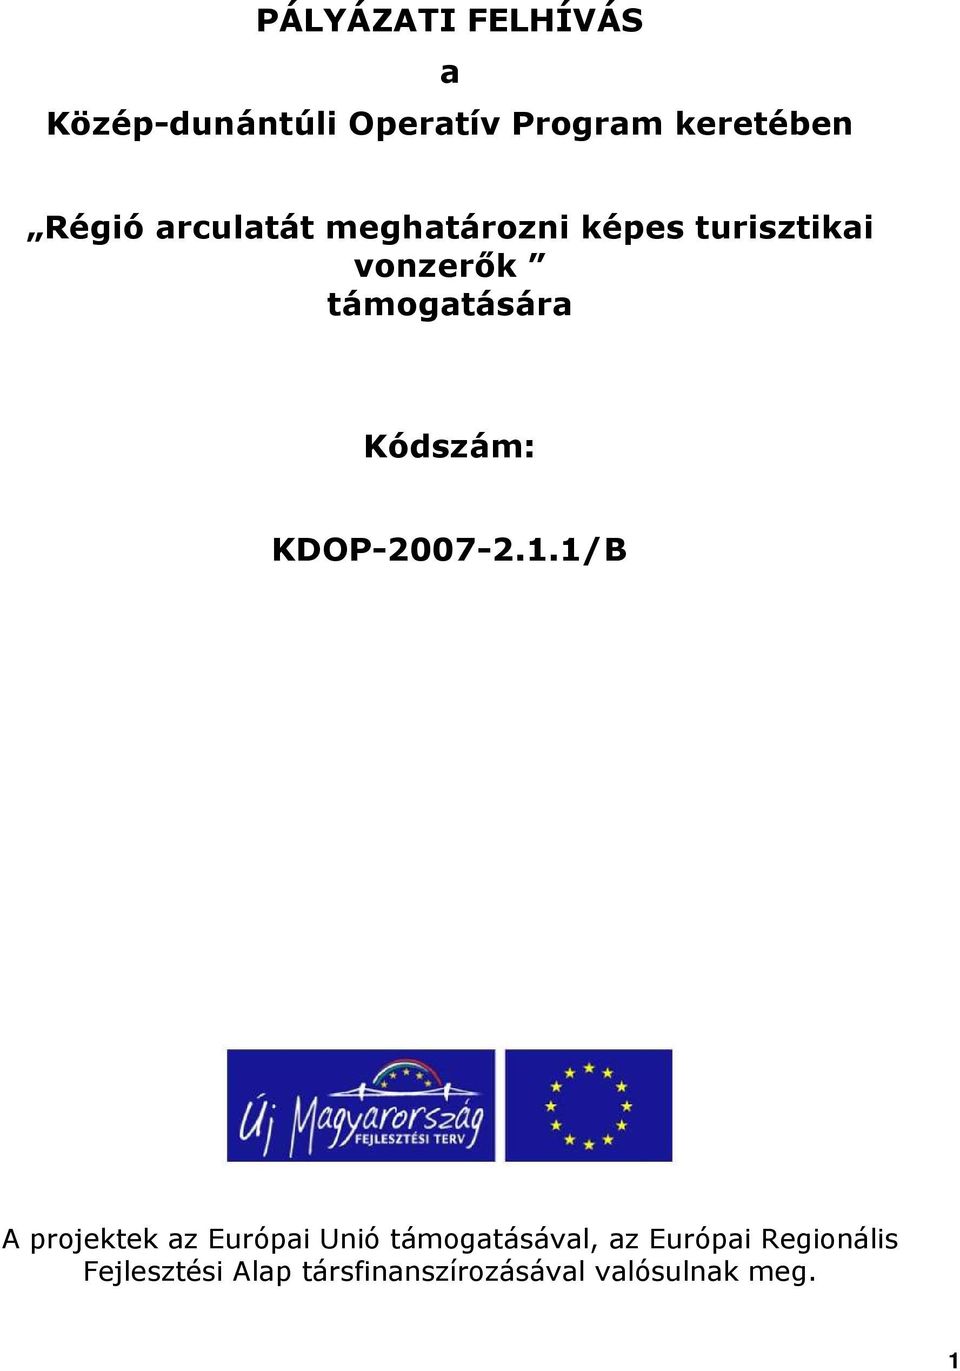 Kódszám: KDOP-2007-2.1.